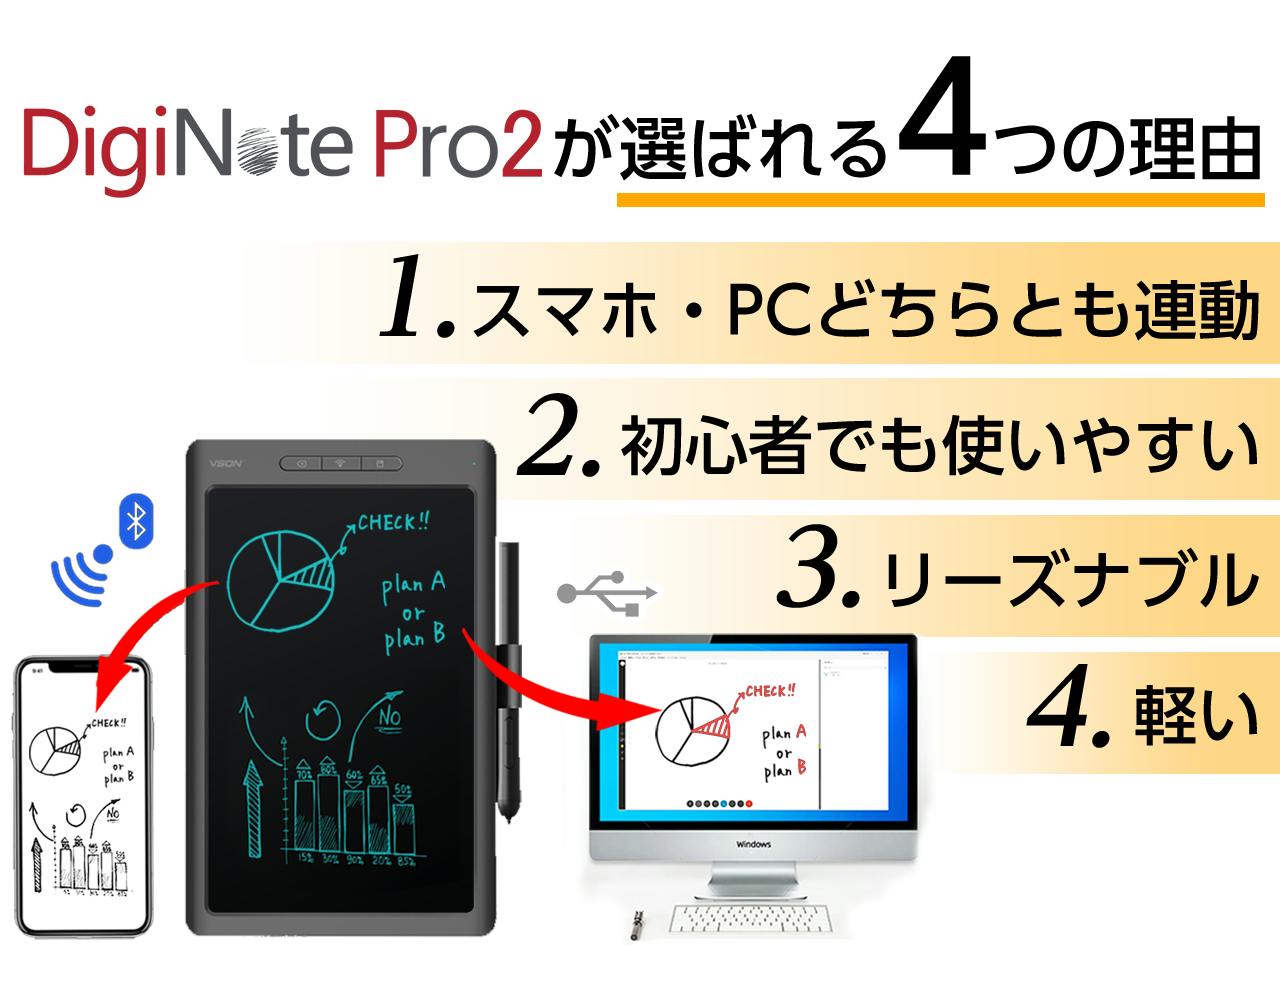 【バッテリーレスペン採用】進化した『DigiNote Pro2』パソコン連動可能